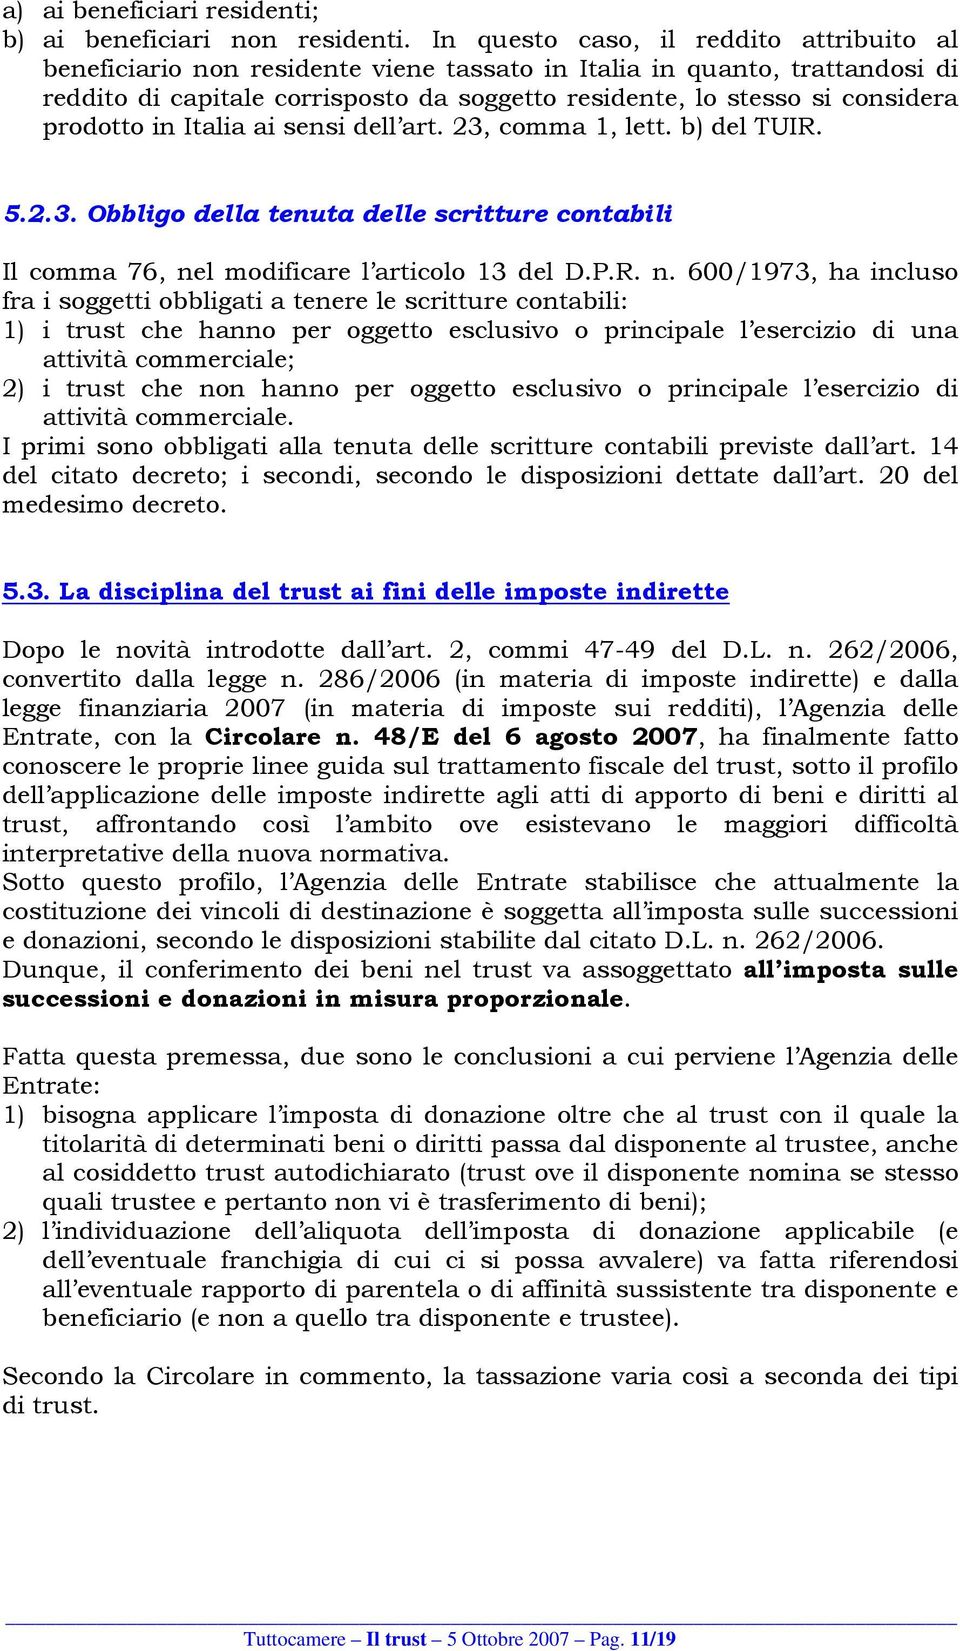 prodotto in Italia ai sensi dell art. 23, comma 1, lett. b) del TUIR. 5.2.3. Obbligo della tenuta delle scritture contabili Il comma 76, ne